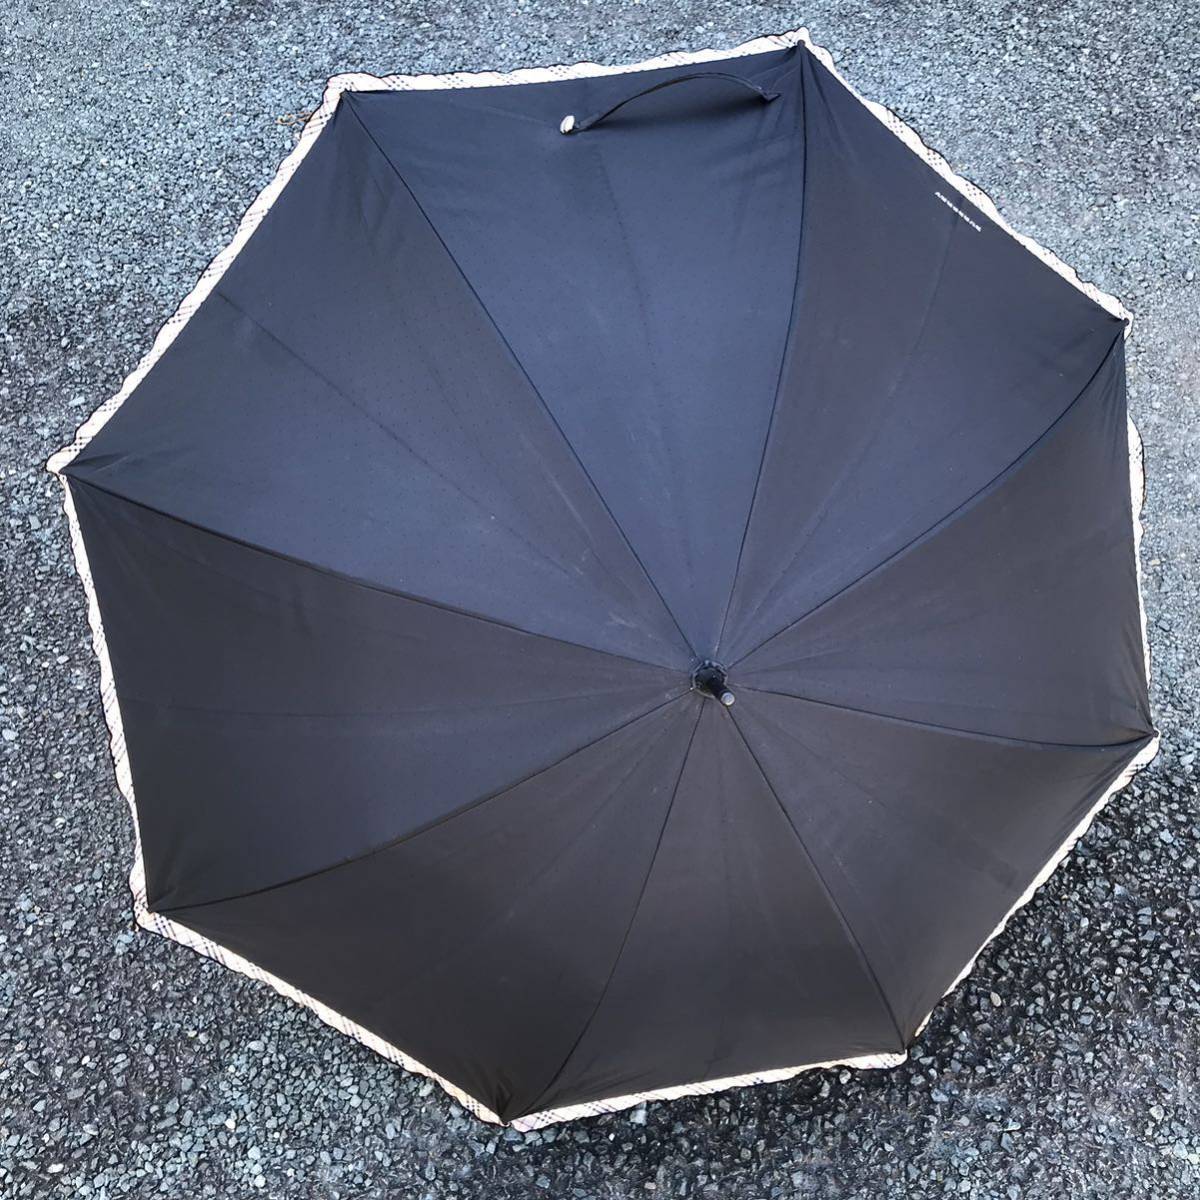 【バーバリー】本物 BURBERRY 傘 チェック柄 ドット模様 全長84cm 晴雨兼用 雨傘 アンブレラ 雨傘 日傘 長傘 メンズ レディース_画像3